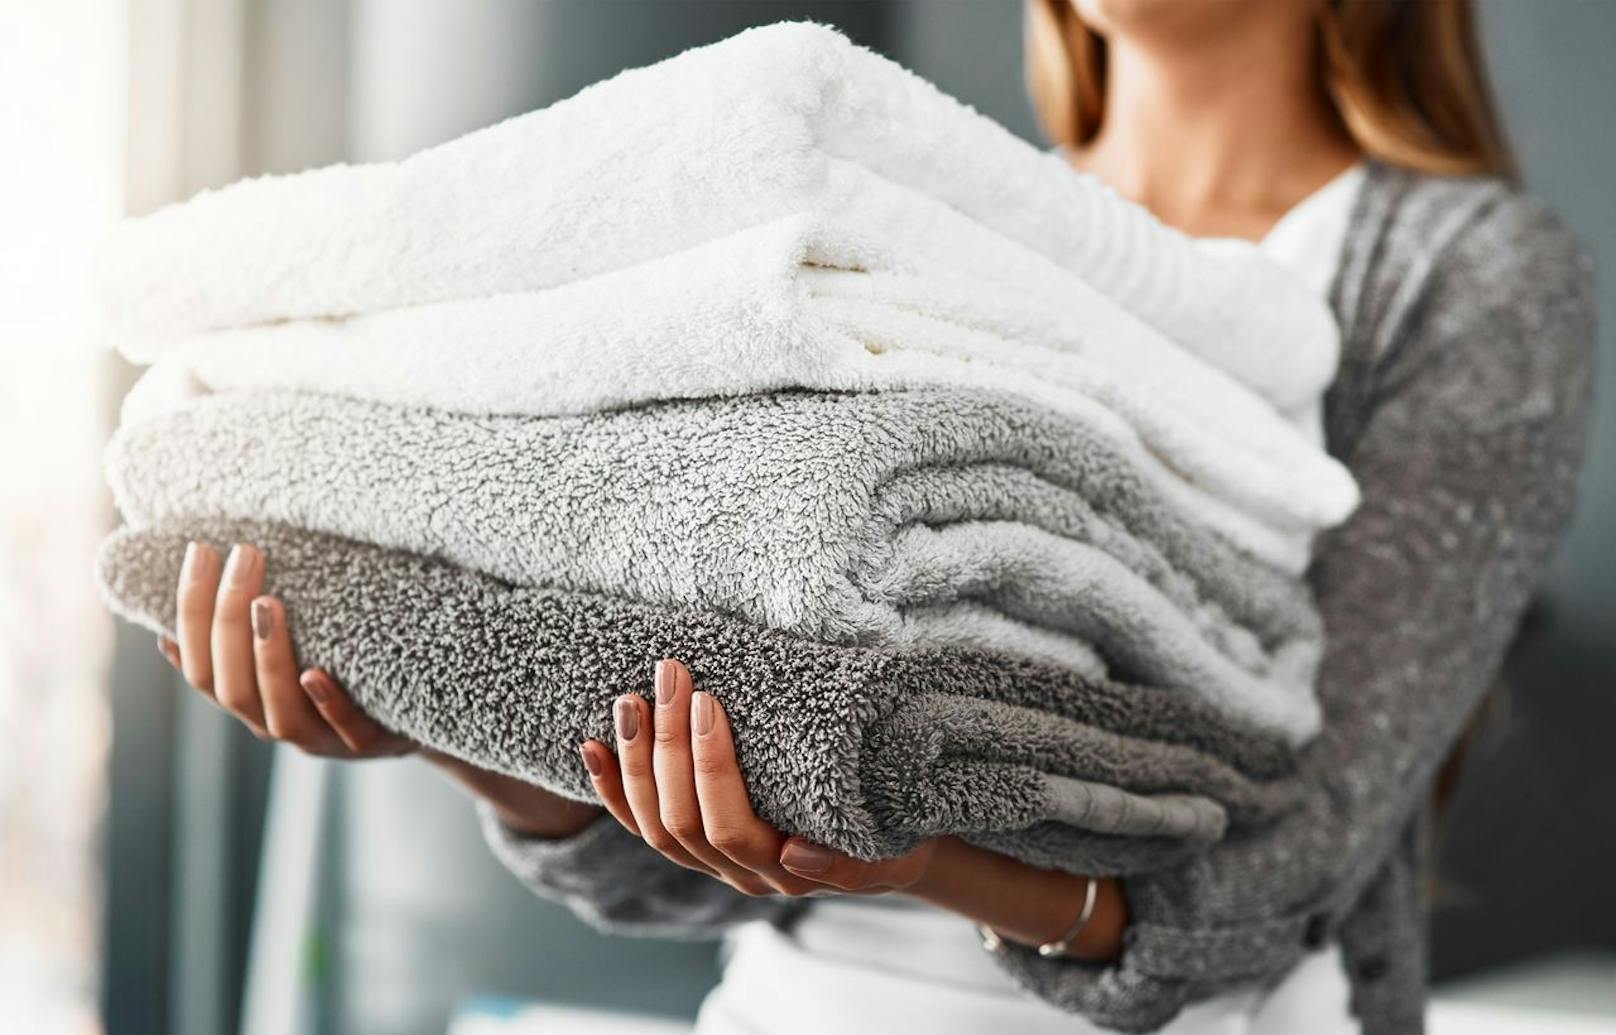 Selbst in frisch gewaschenen Handtüchern tummeln sich 190.000 Bakterien, deren Zahl mit jeder Nutzung zunimmt.